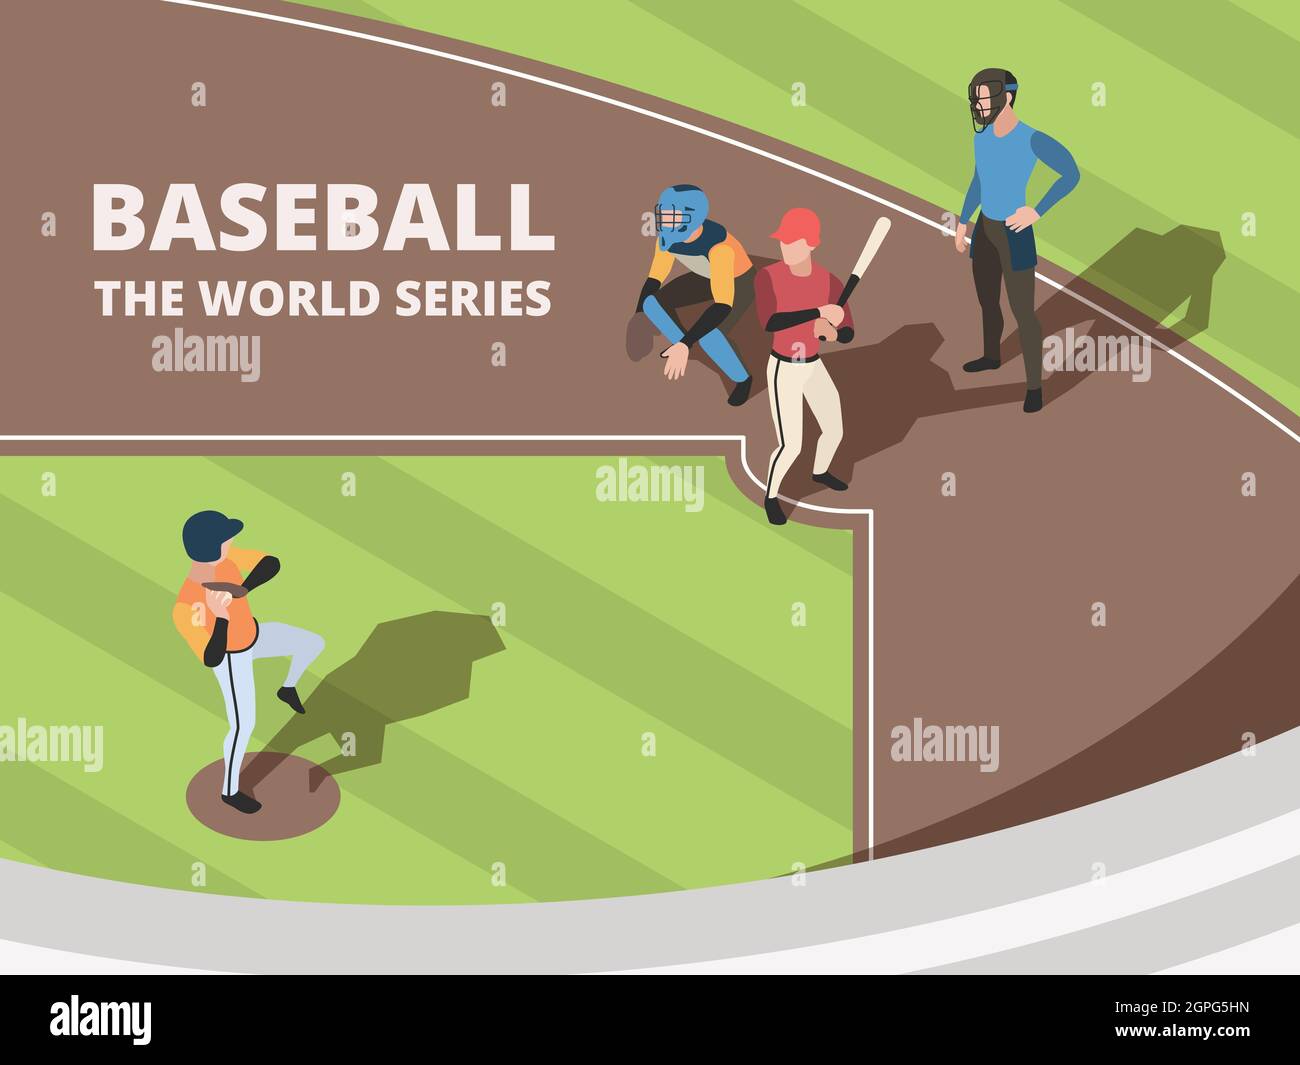 Baseballfeld. Sport-Team-Spieler spielen auf Baseballstadion Zeichen in Aktion stellt Vektor Menschen Stock Vektor